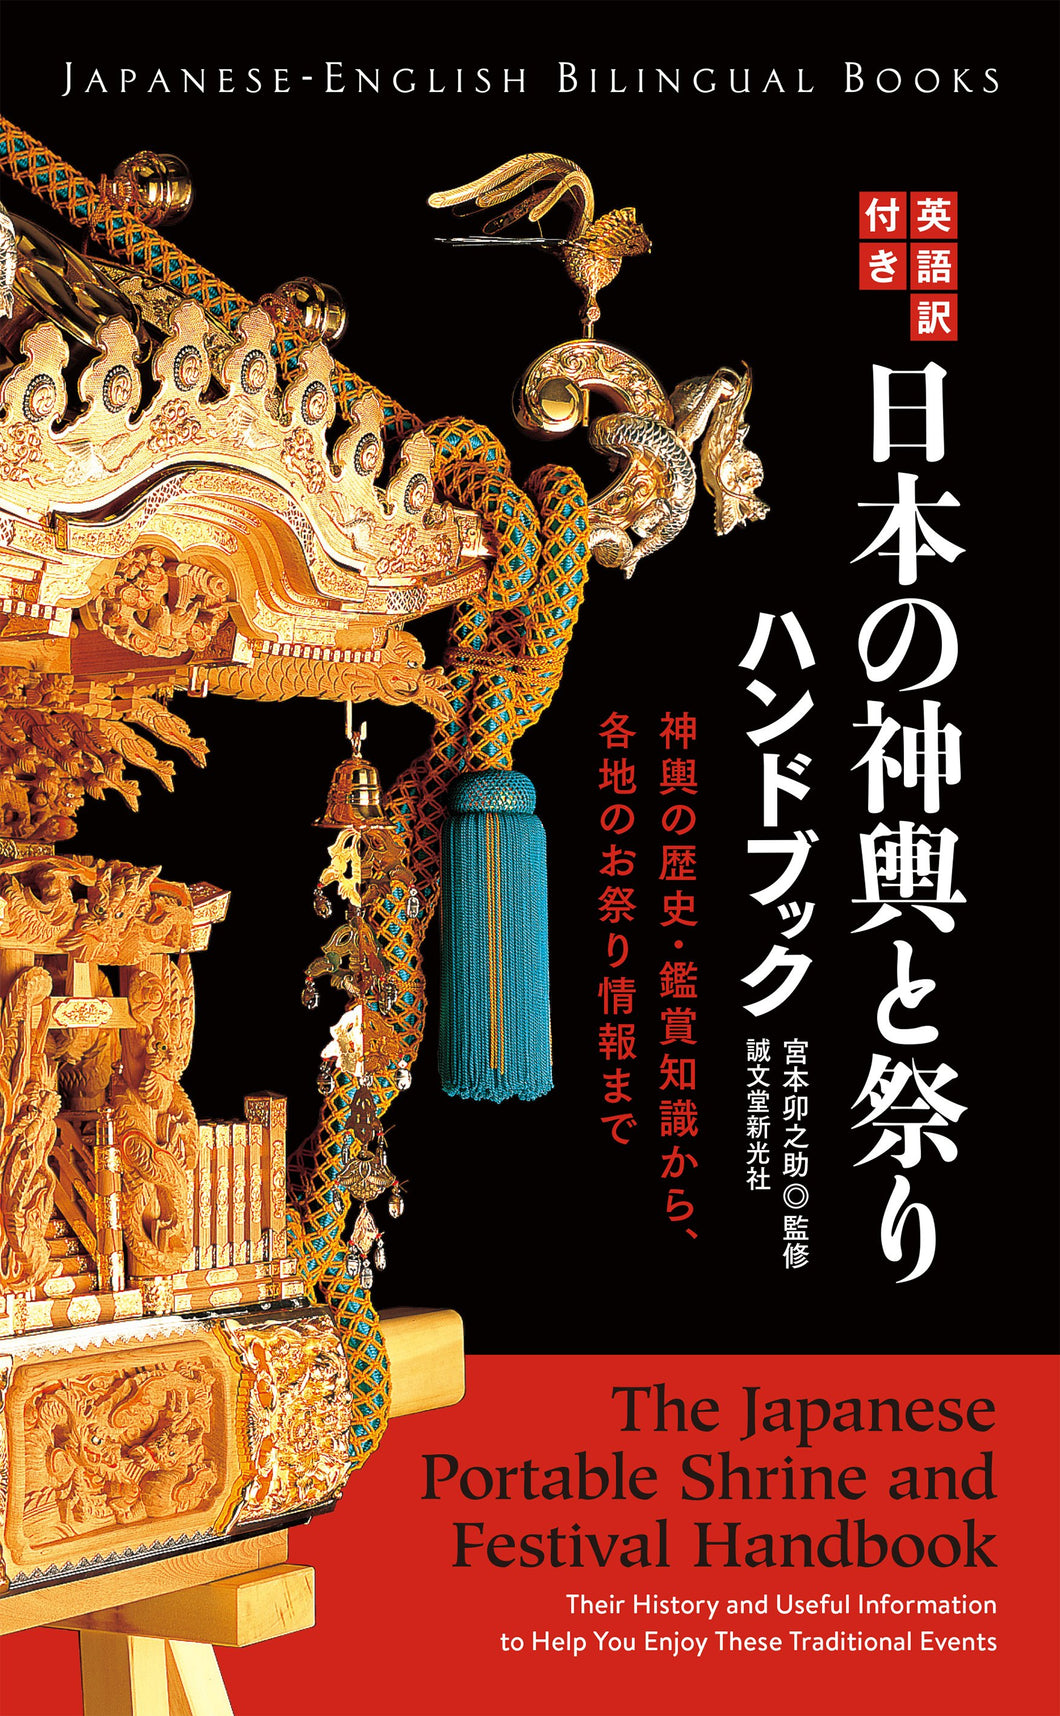 Japanese Mikoshi and Festival Handbook with English translation